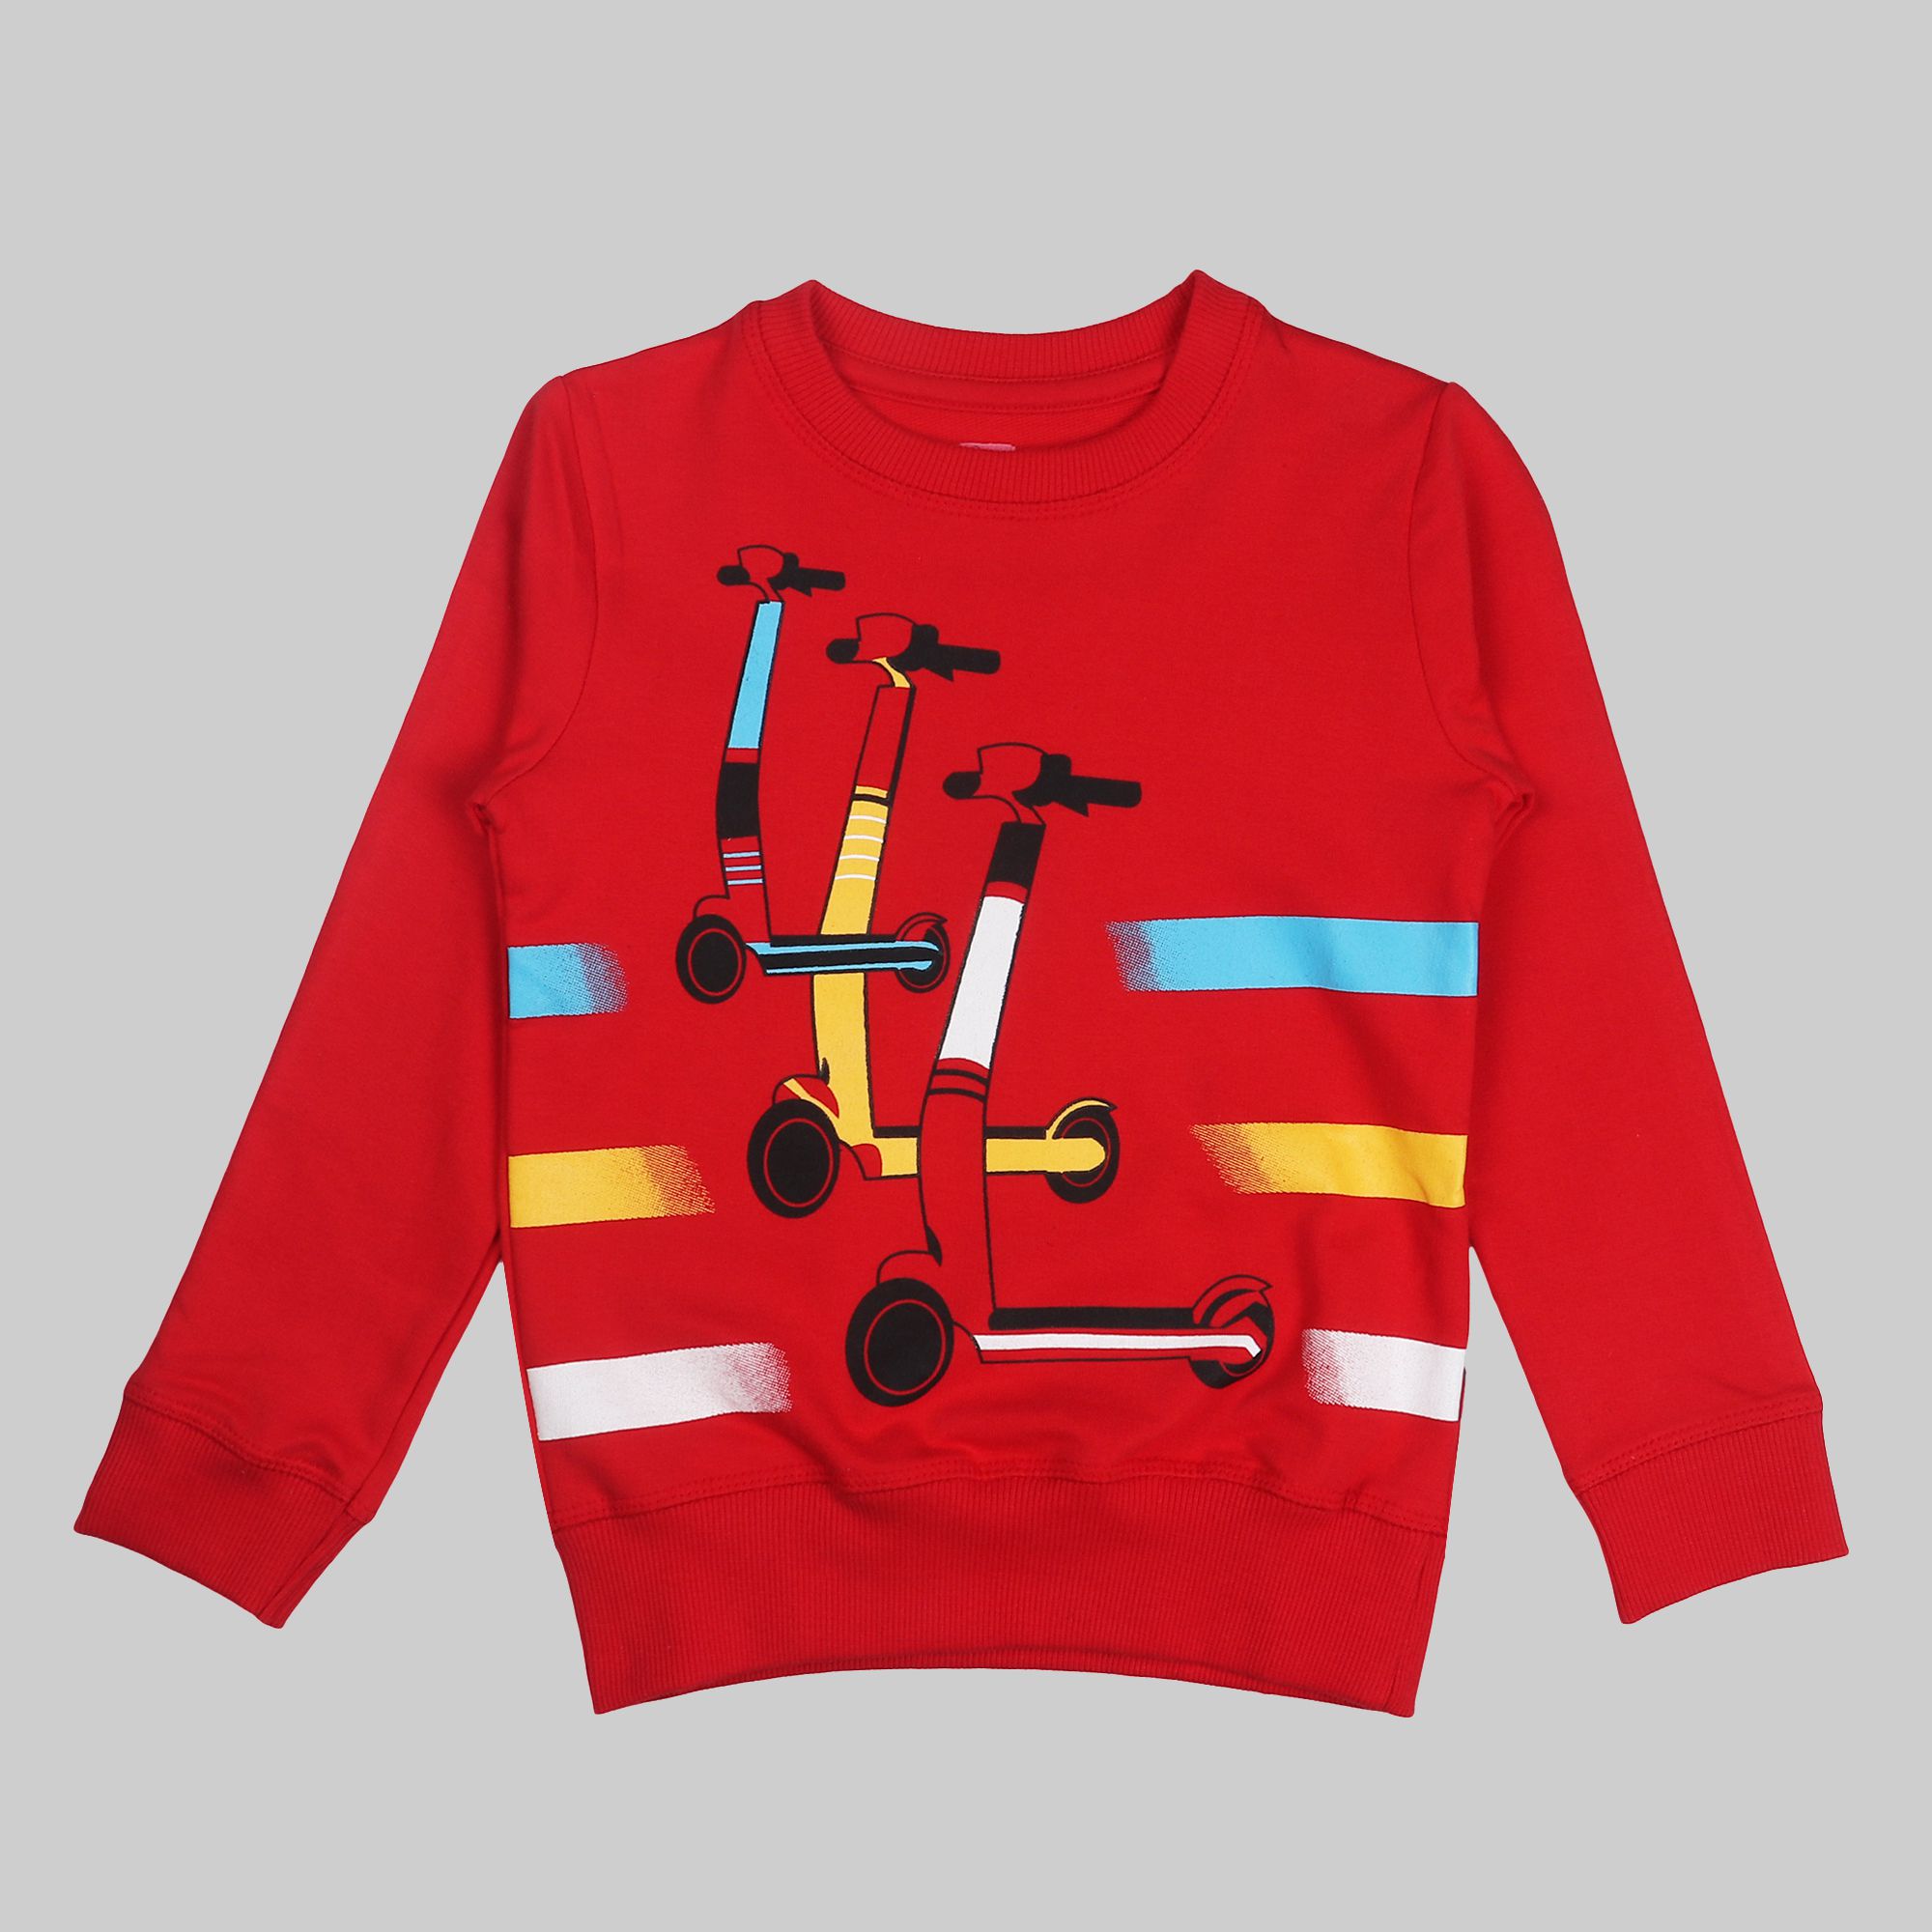     			Arshia Fashions Red Fleece Boys Sweatshirt ( Pack of 1 )